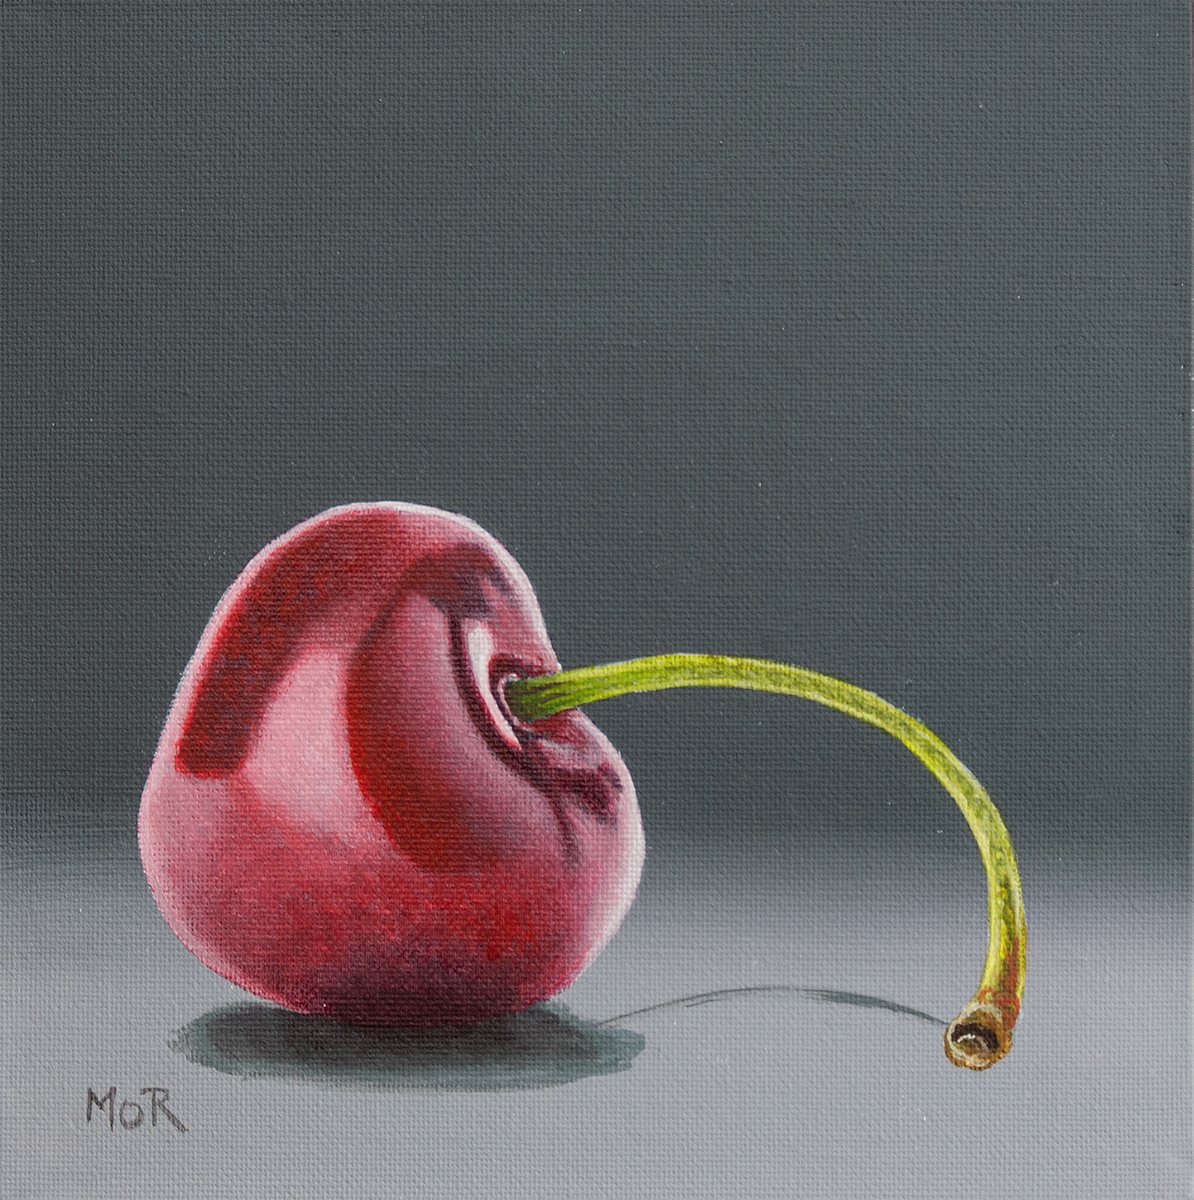 Sad Cherry by Dietrich Moravec